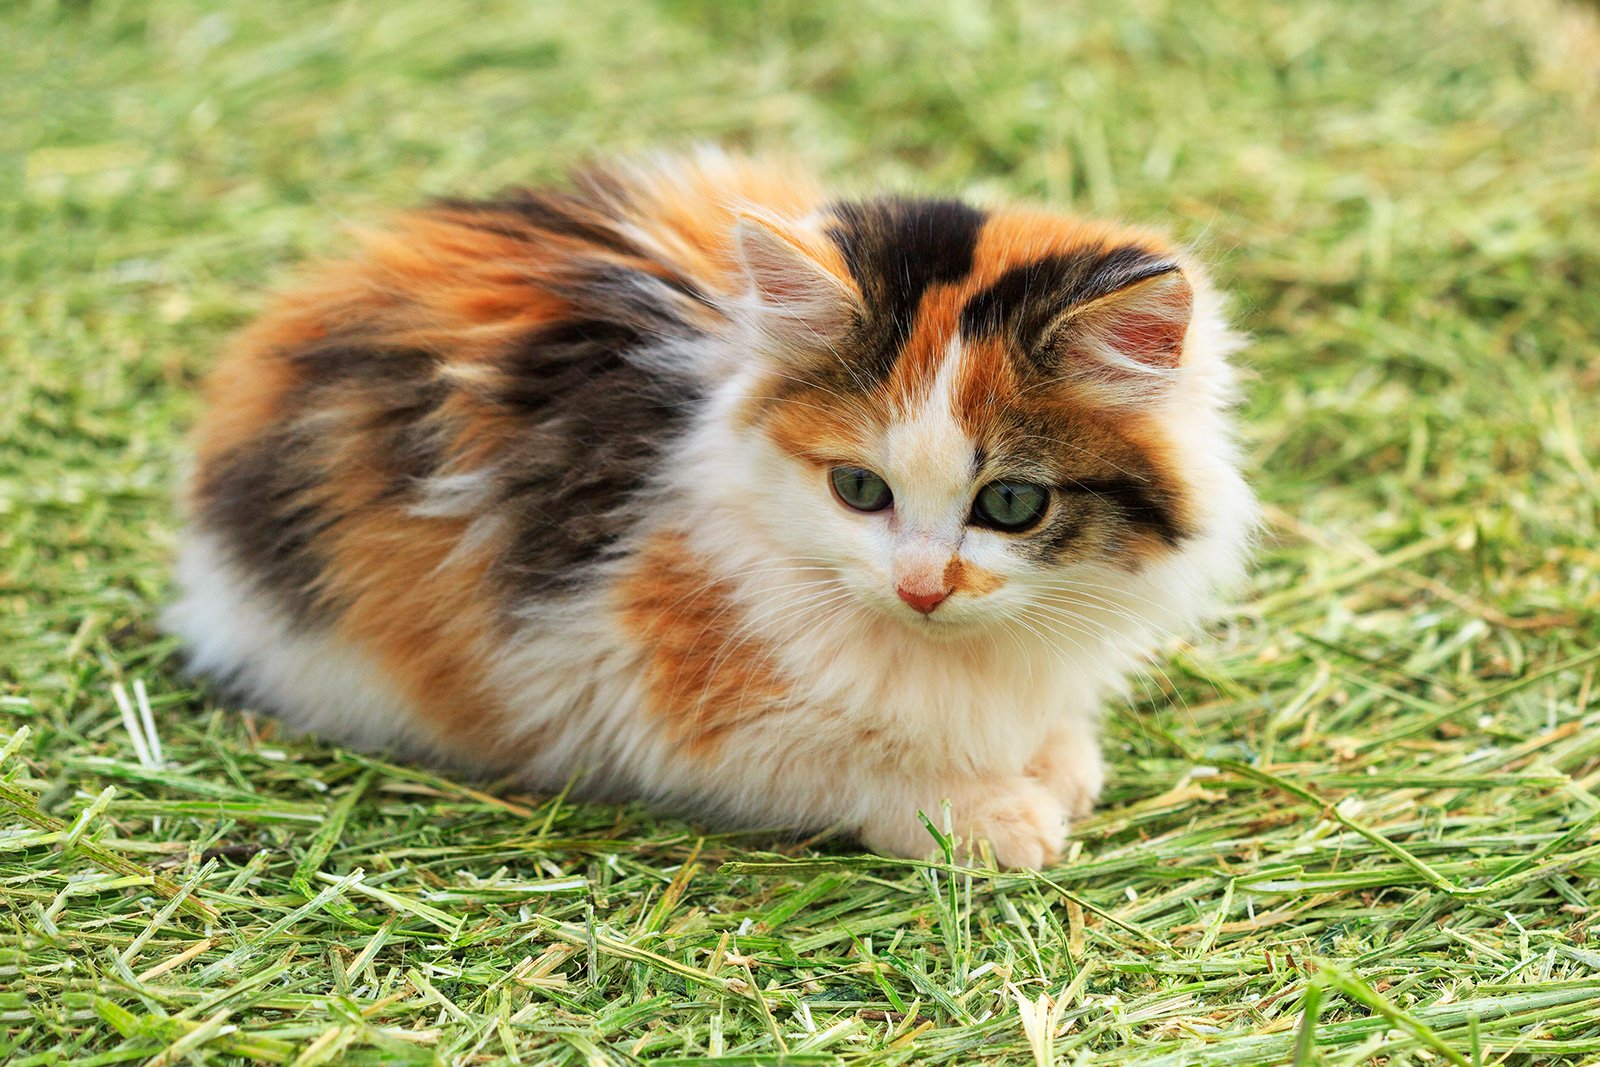 Трехцветная кошка в доме: приметы, поверья и суеверия